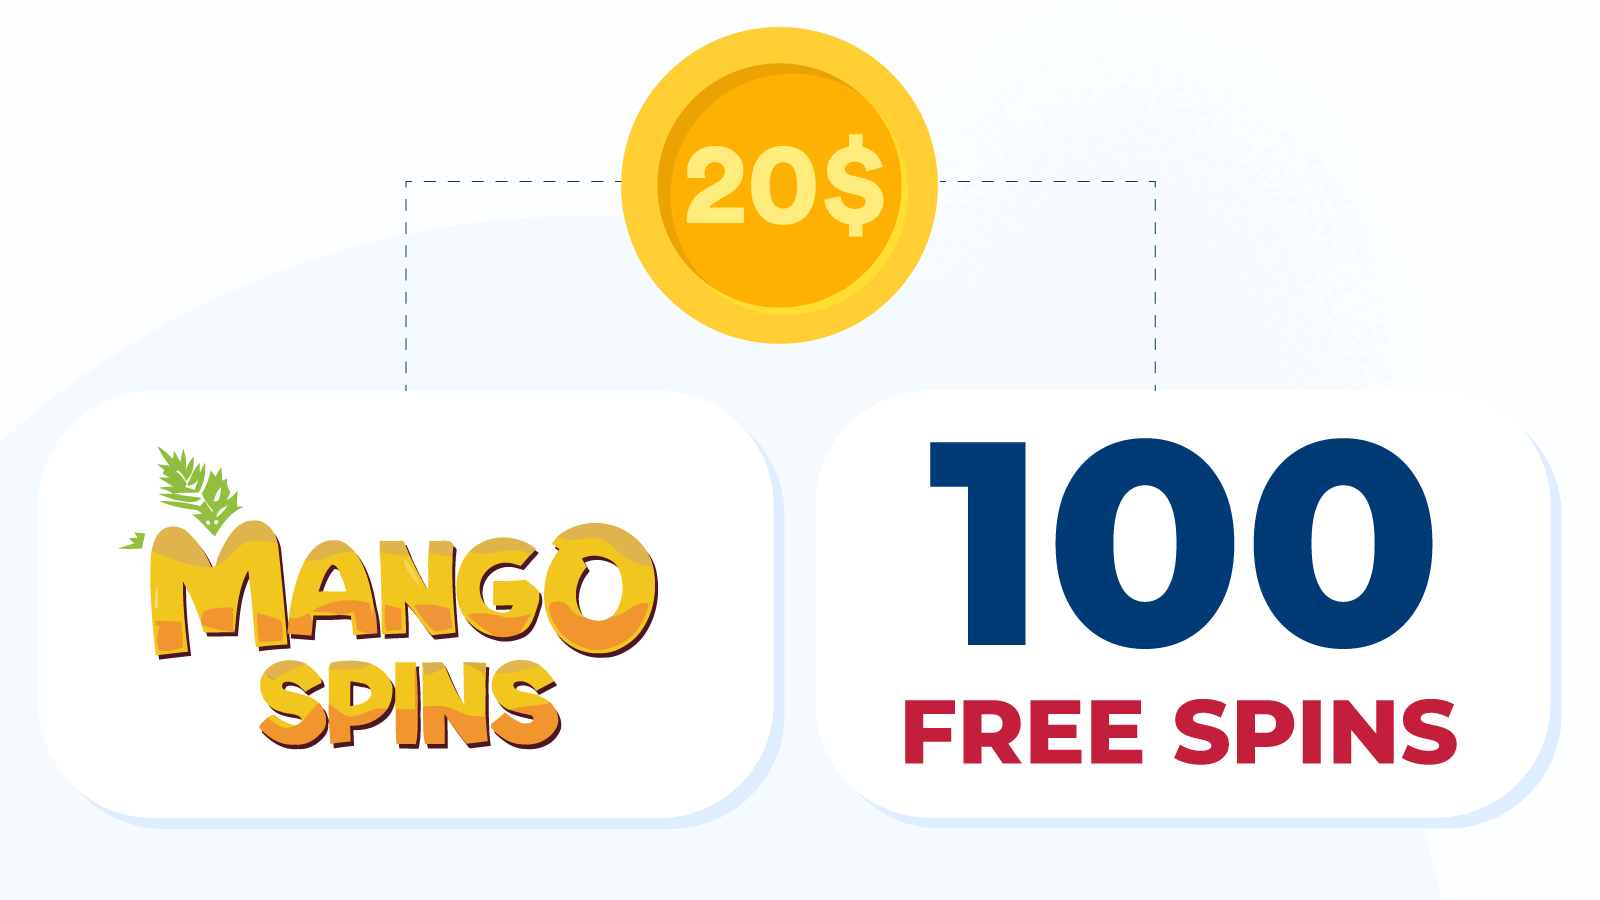 Deposite R$ 20 e ganhe 100 rodadas grátis sem apostar no Mango Spins